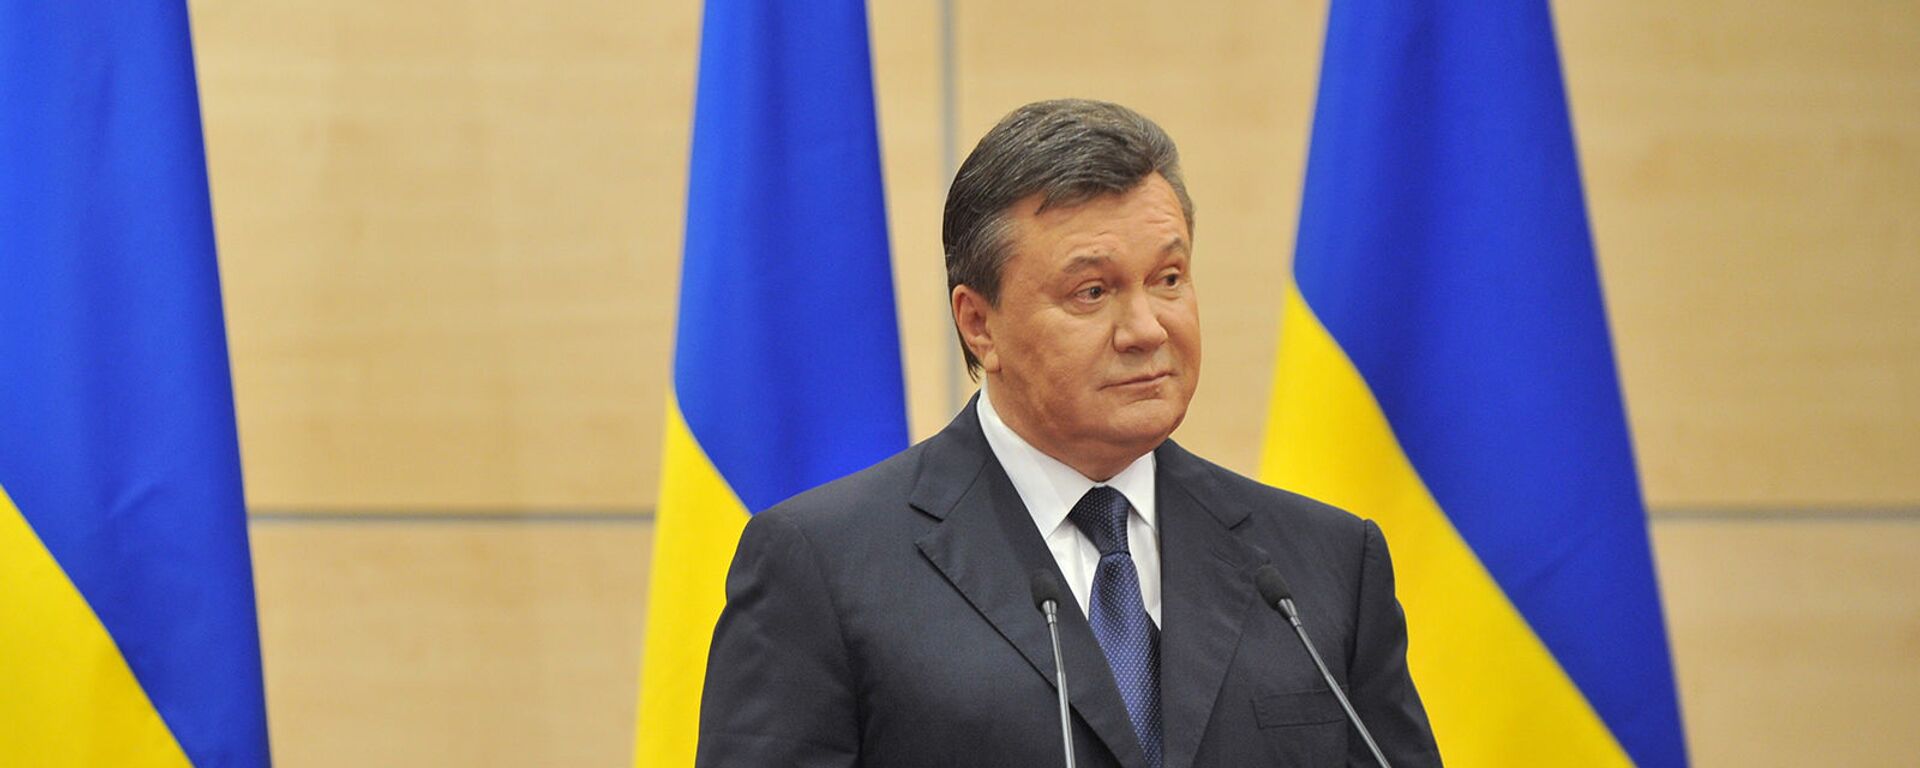 Виктор Янукович, объявивший себя ранее легитимным президентом Украины, выступает на пресс-конференции (11 марта 2014). Ростов-на-Дону - Sputnik Արմենիա, 1920, 17.08.2021